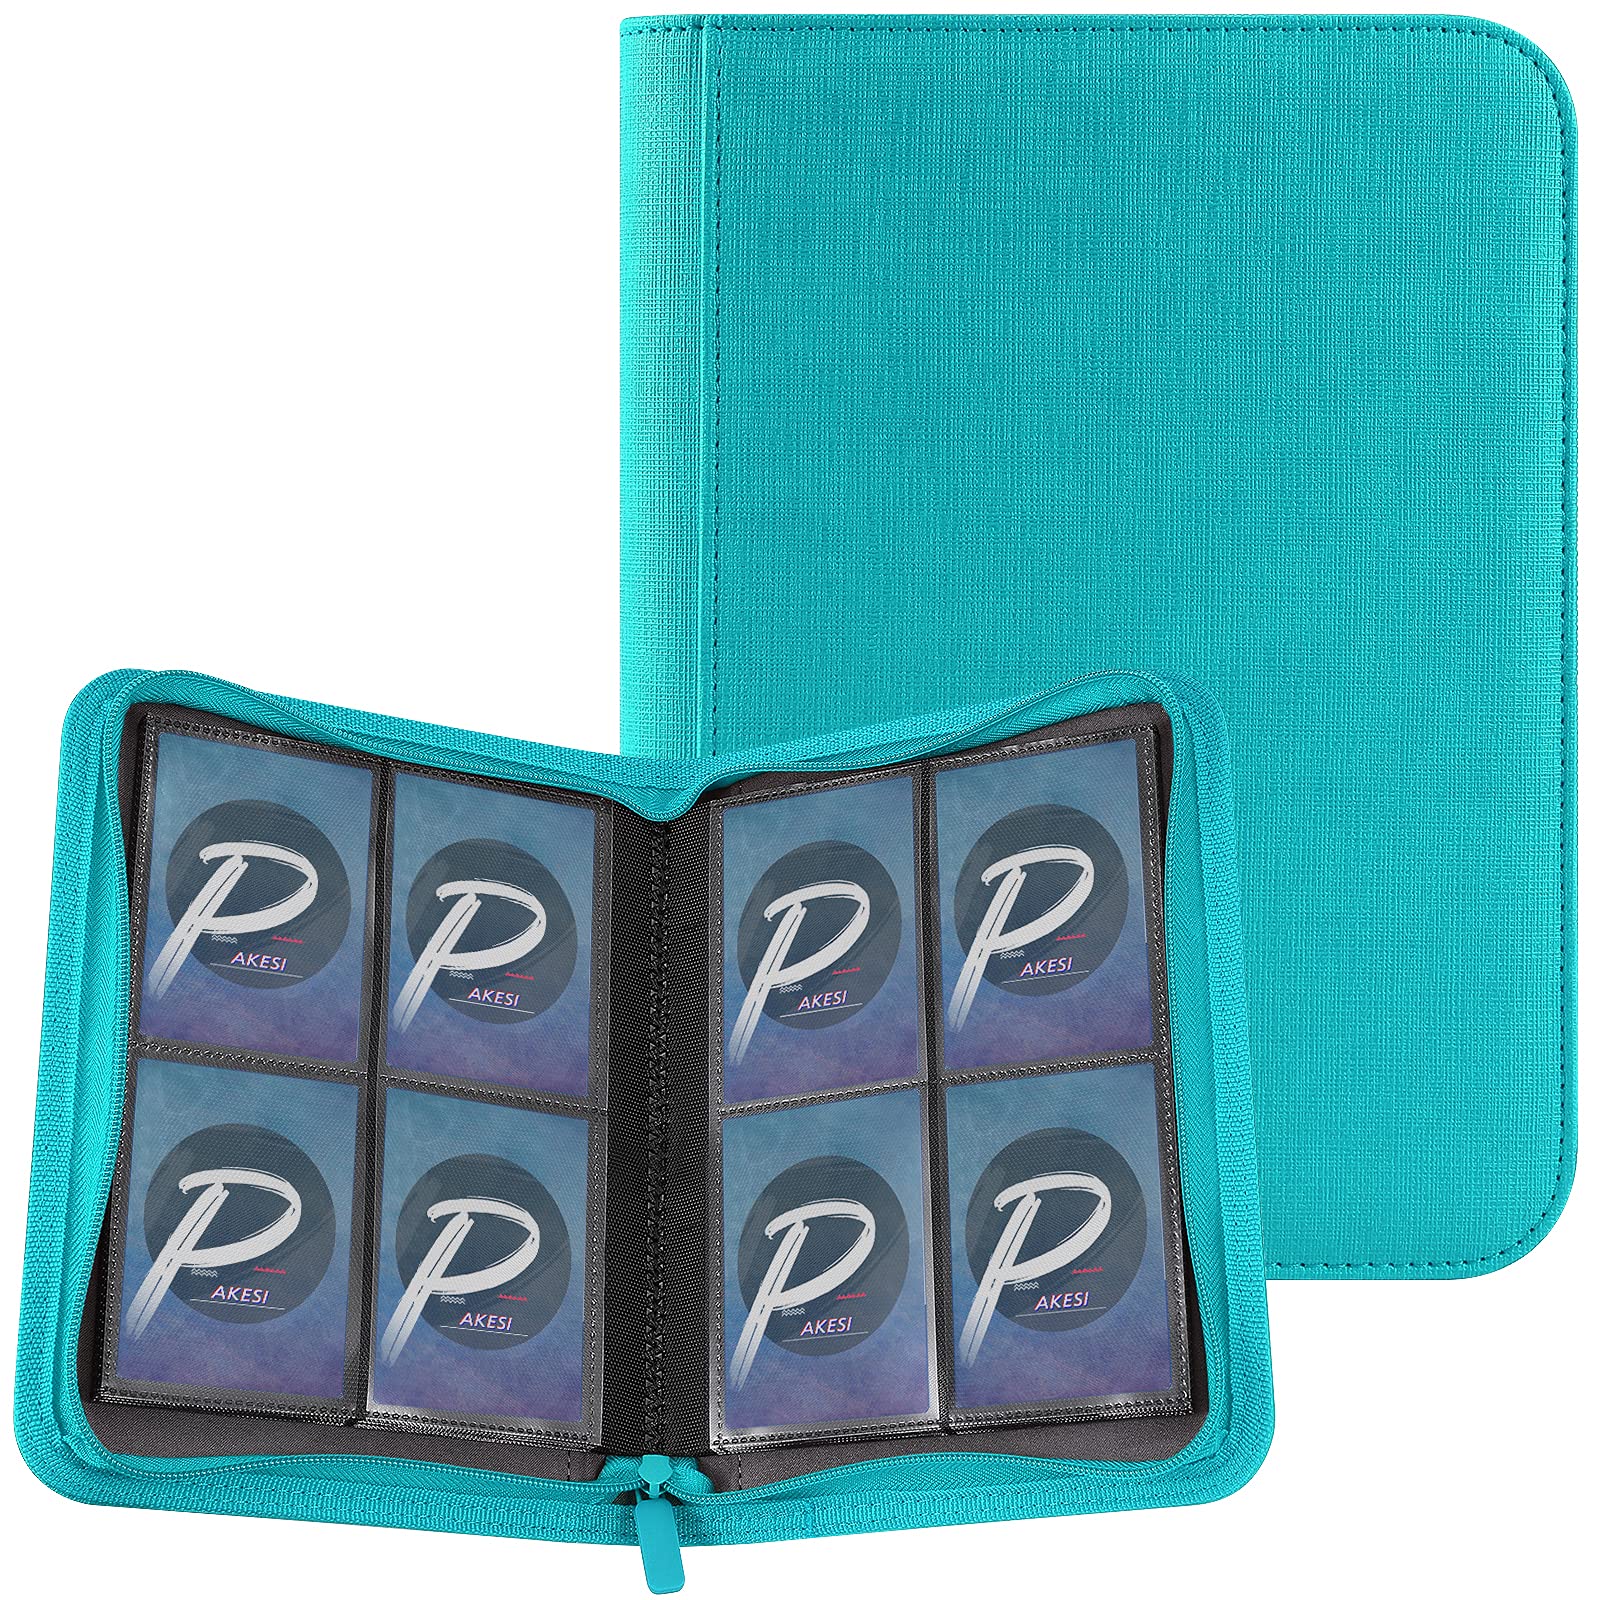 PAKESI スターカードカードファイル4ポケット 160枚収納 PU カードシート と他のカードを集める スターカード コレクションファイル (水色)